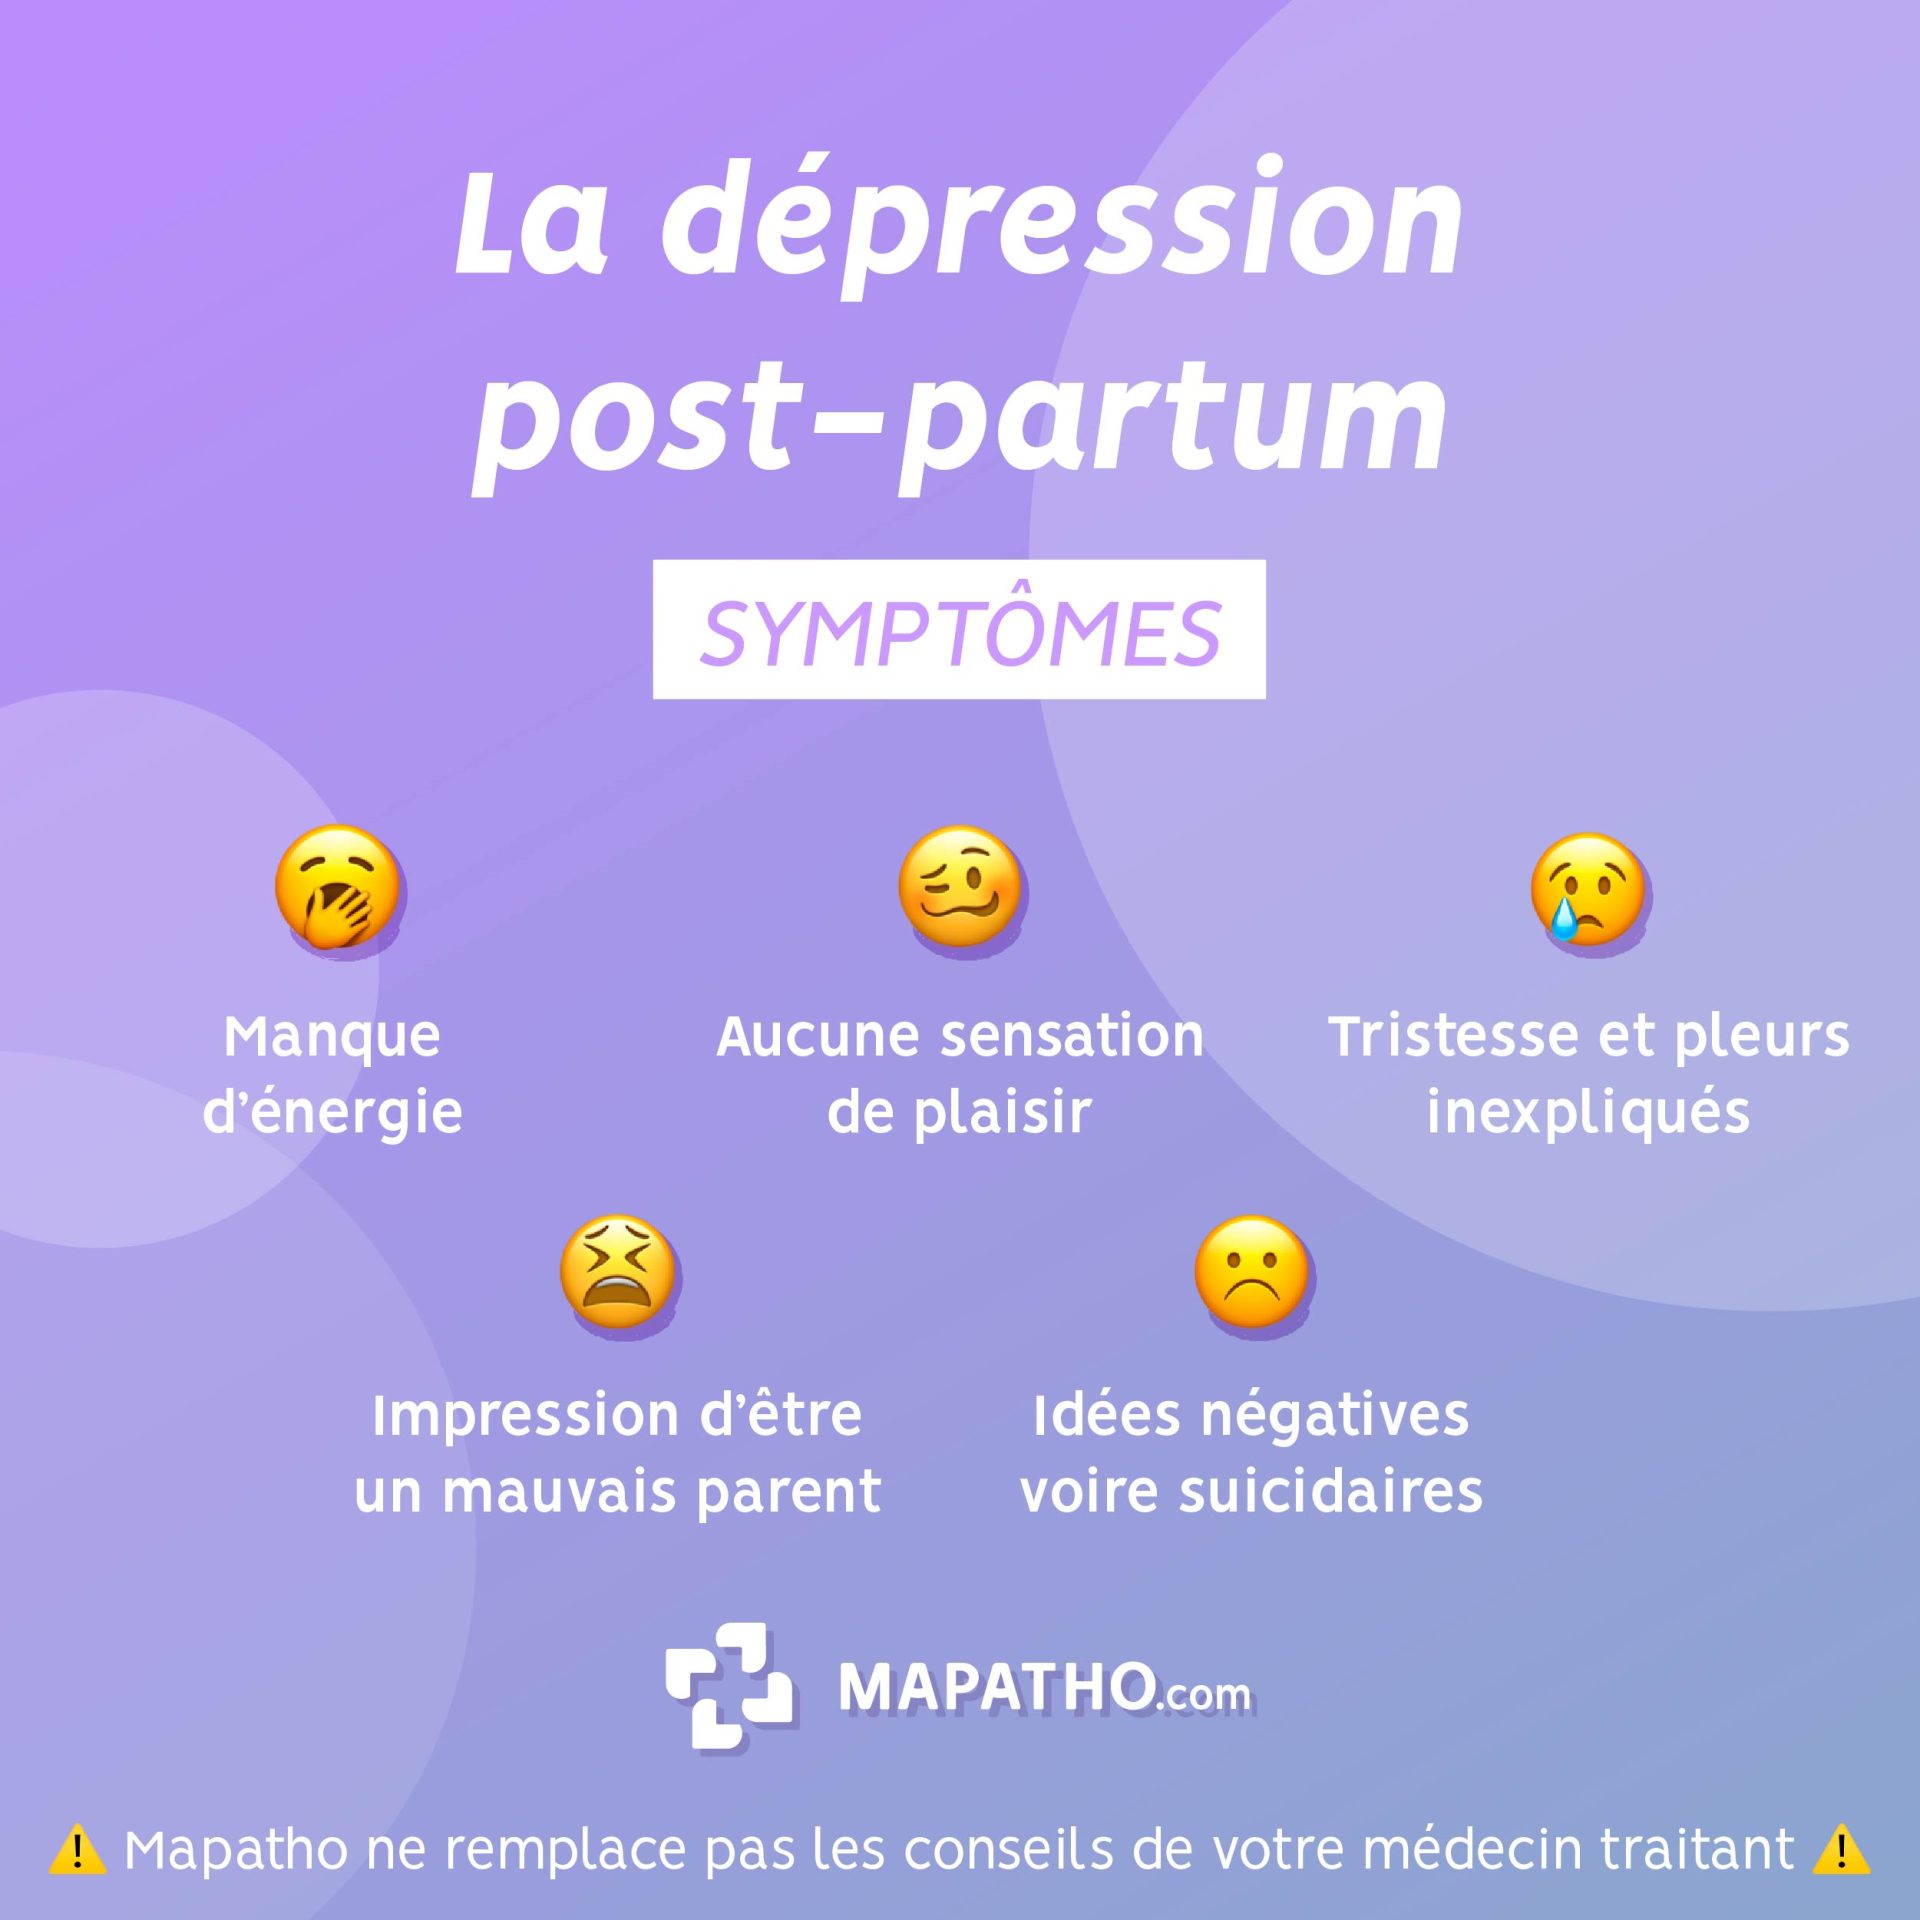 Les symptomes de la depression post-partum